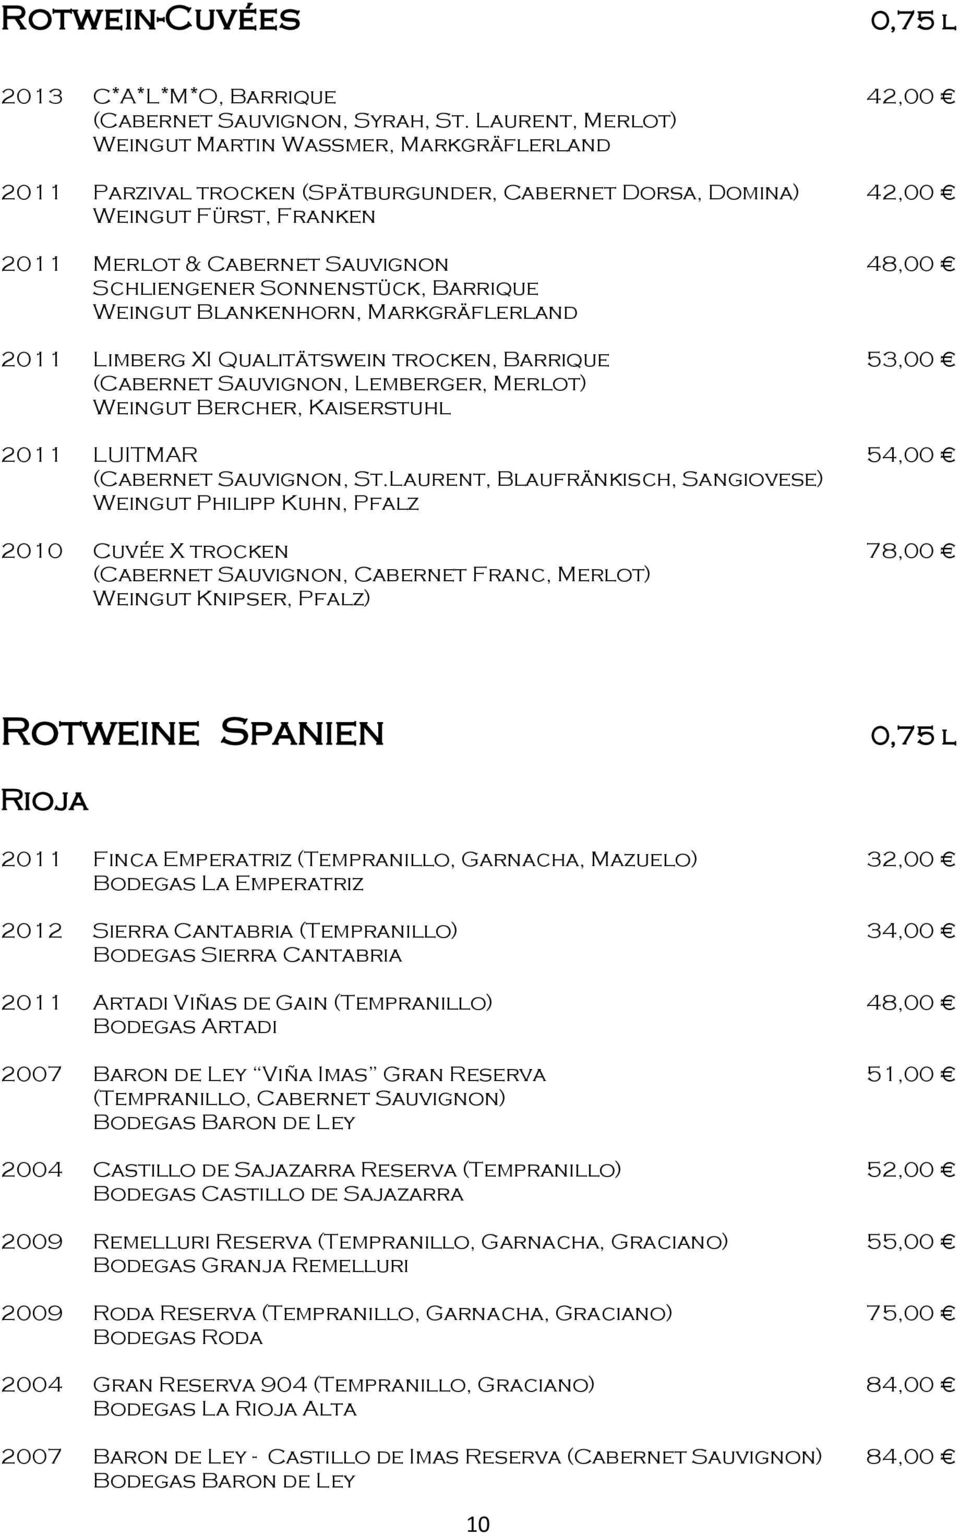 Blankenhorn, Markgräflerland 2011 Limberg XI Qualitätswein trocken, Barrique 53,00 (Cabernet Sauvignon, Lemberger, Merlot) Weingut Bercher, Kaiserstuhl 2011 LUITMAR 54,00 (Cabernet Sauvignon, St.